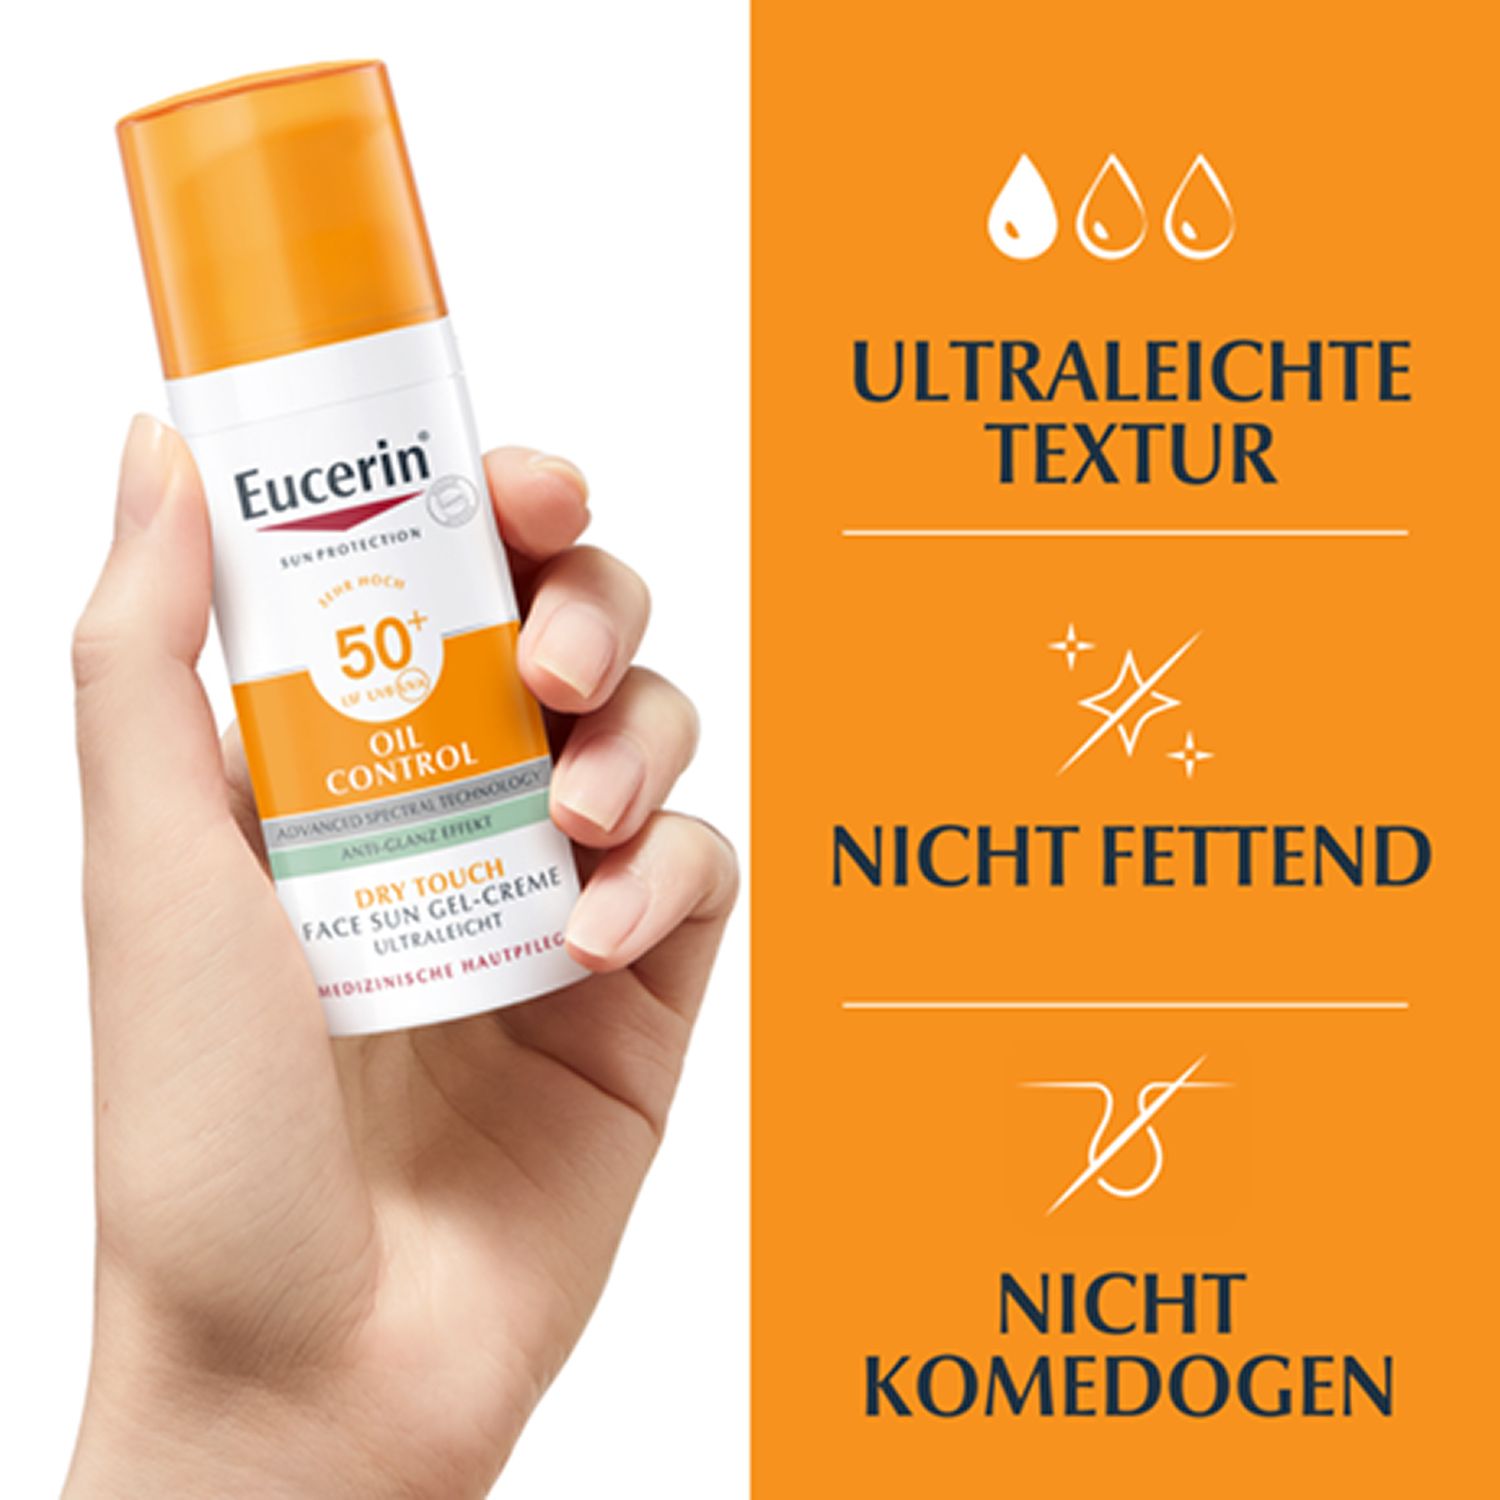 Eucerin® Oil Control Face Sun Gel-Creme LSF 50+ – sehr hoher Sonnenschutz mit 8 Stunden Anti-Glanz Effekt, auch für zu Akne neigende Haut